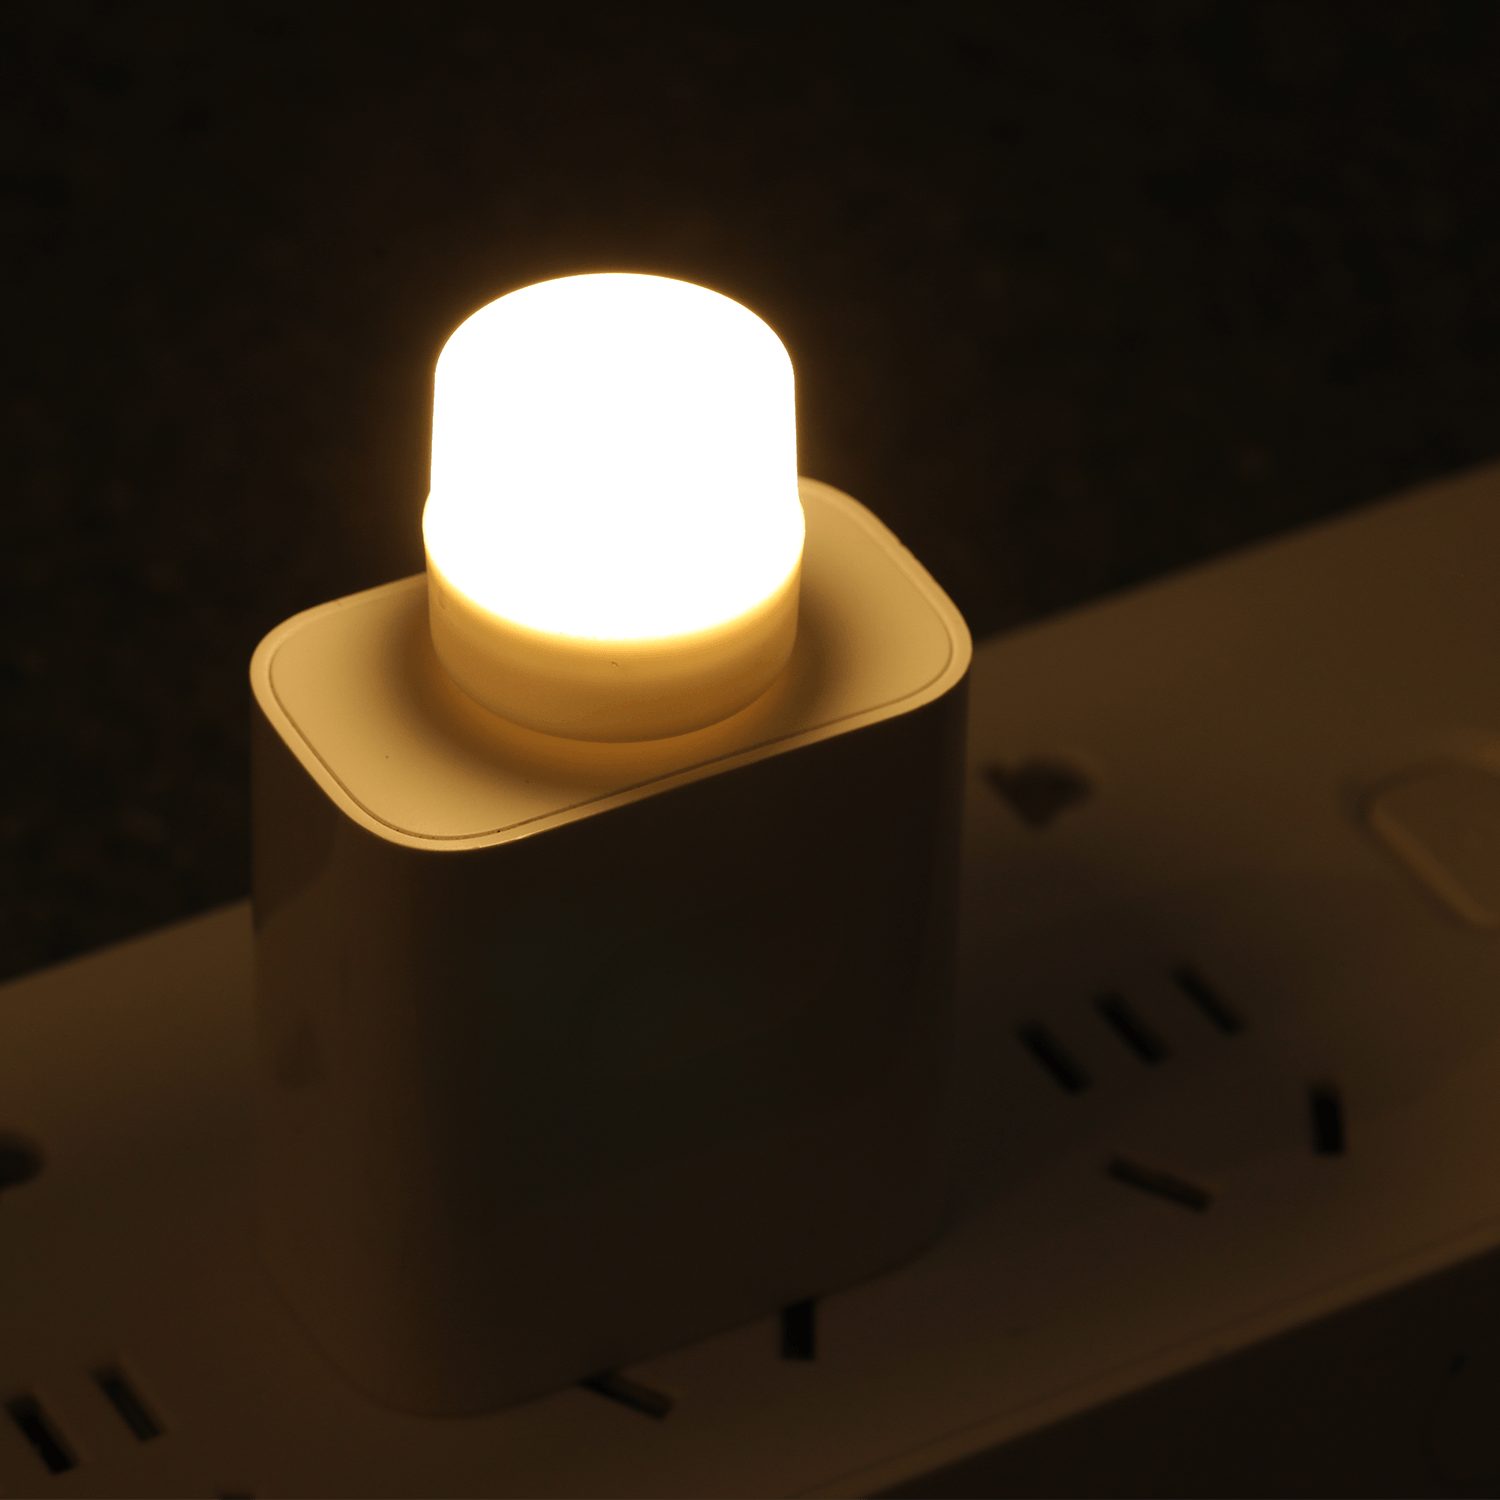 USB-Nachtlicht Mini-LED-Nachtlicht USB-Steckdosenlicht Powerbank USB-Aufladung  Buchlicht Kleines rundes Lese-Augenschutzlicht 1pcs (